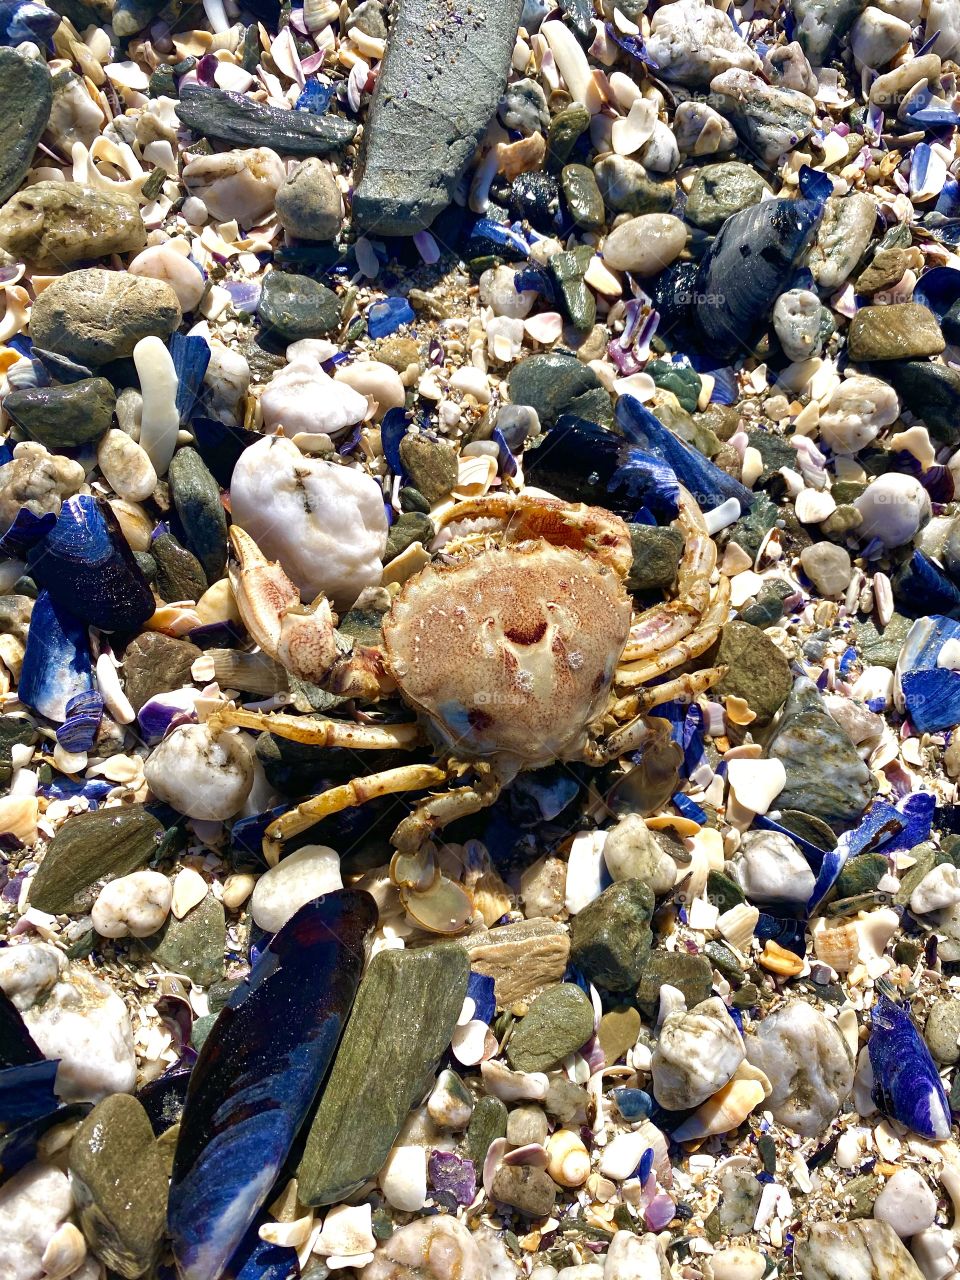 Mr crab